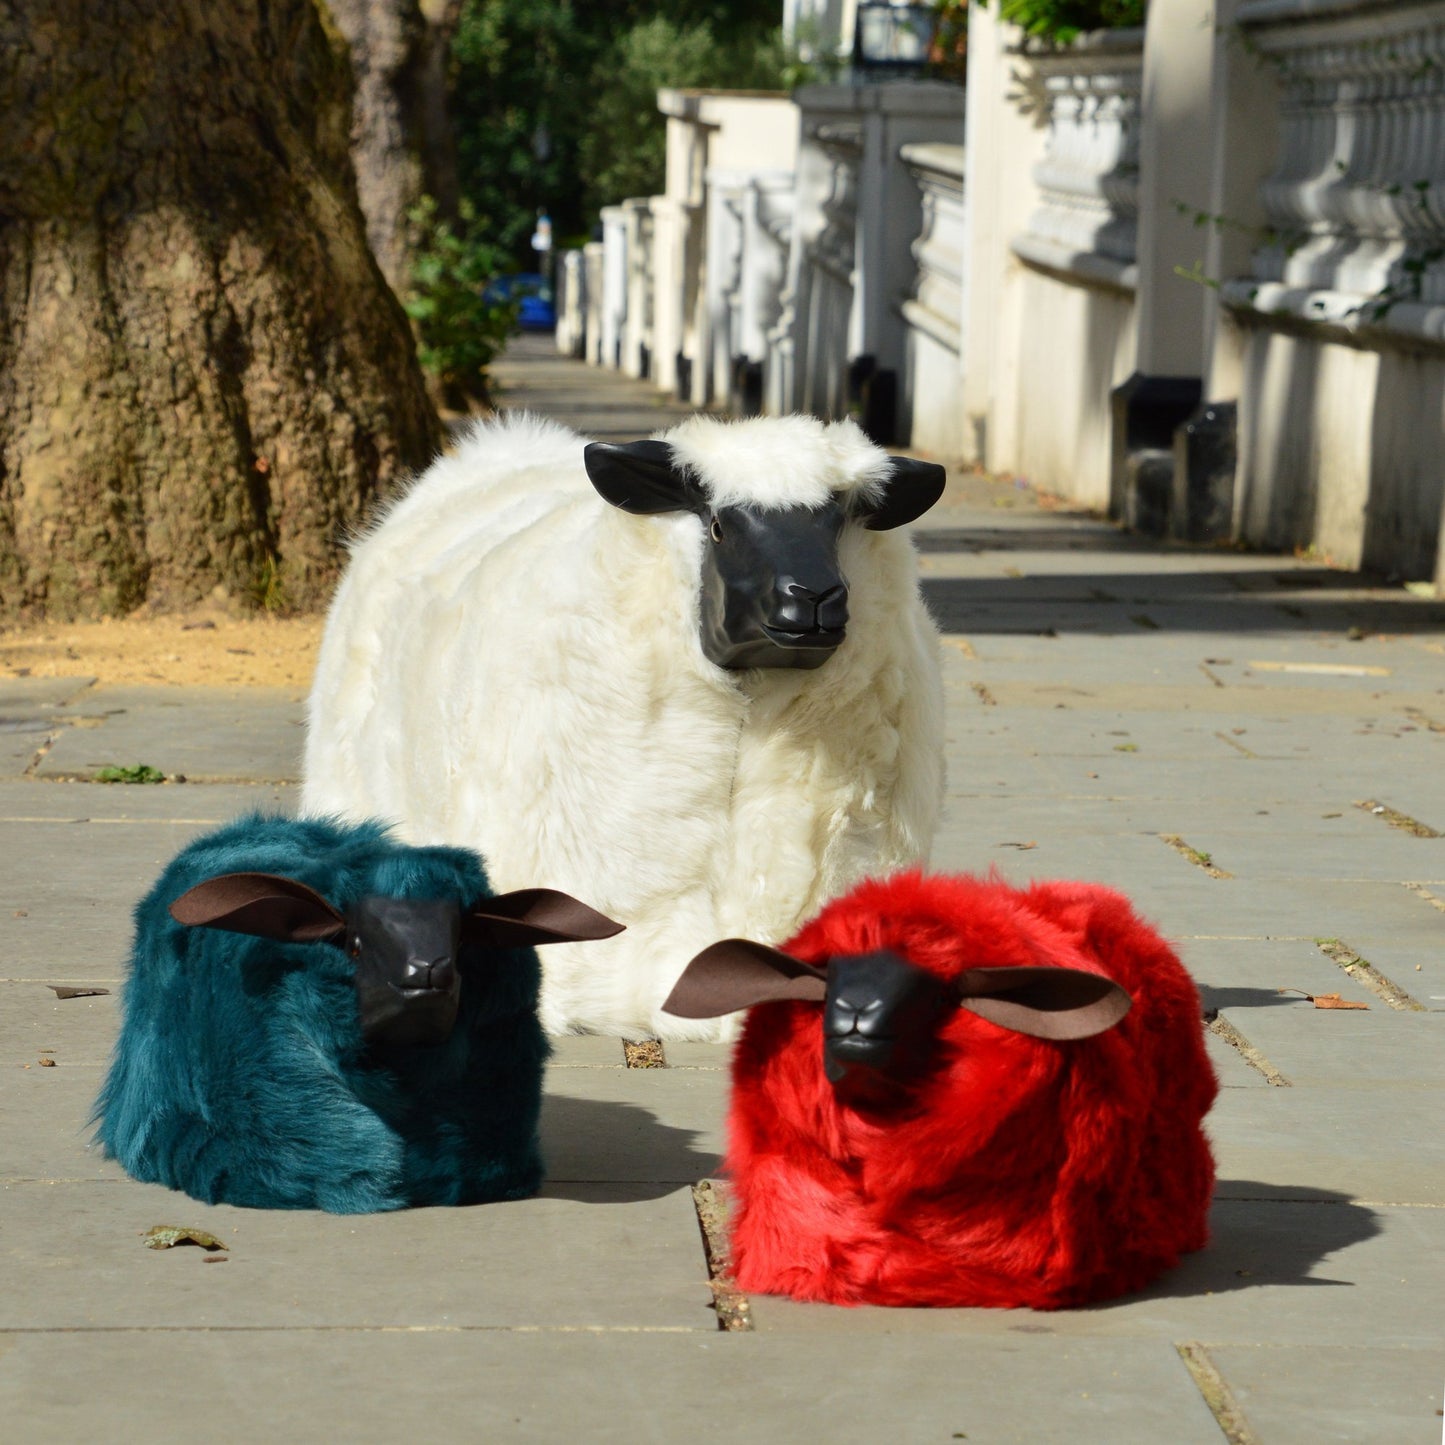 Flockstar Ewe Sheep Seat - Wildash London